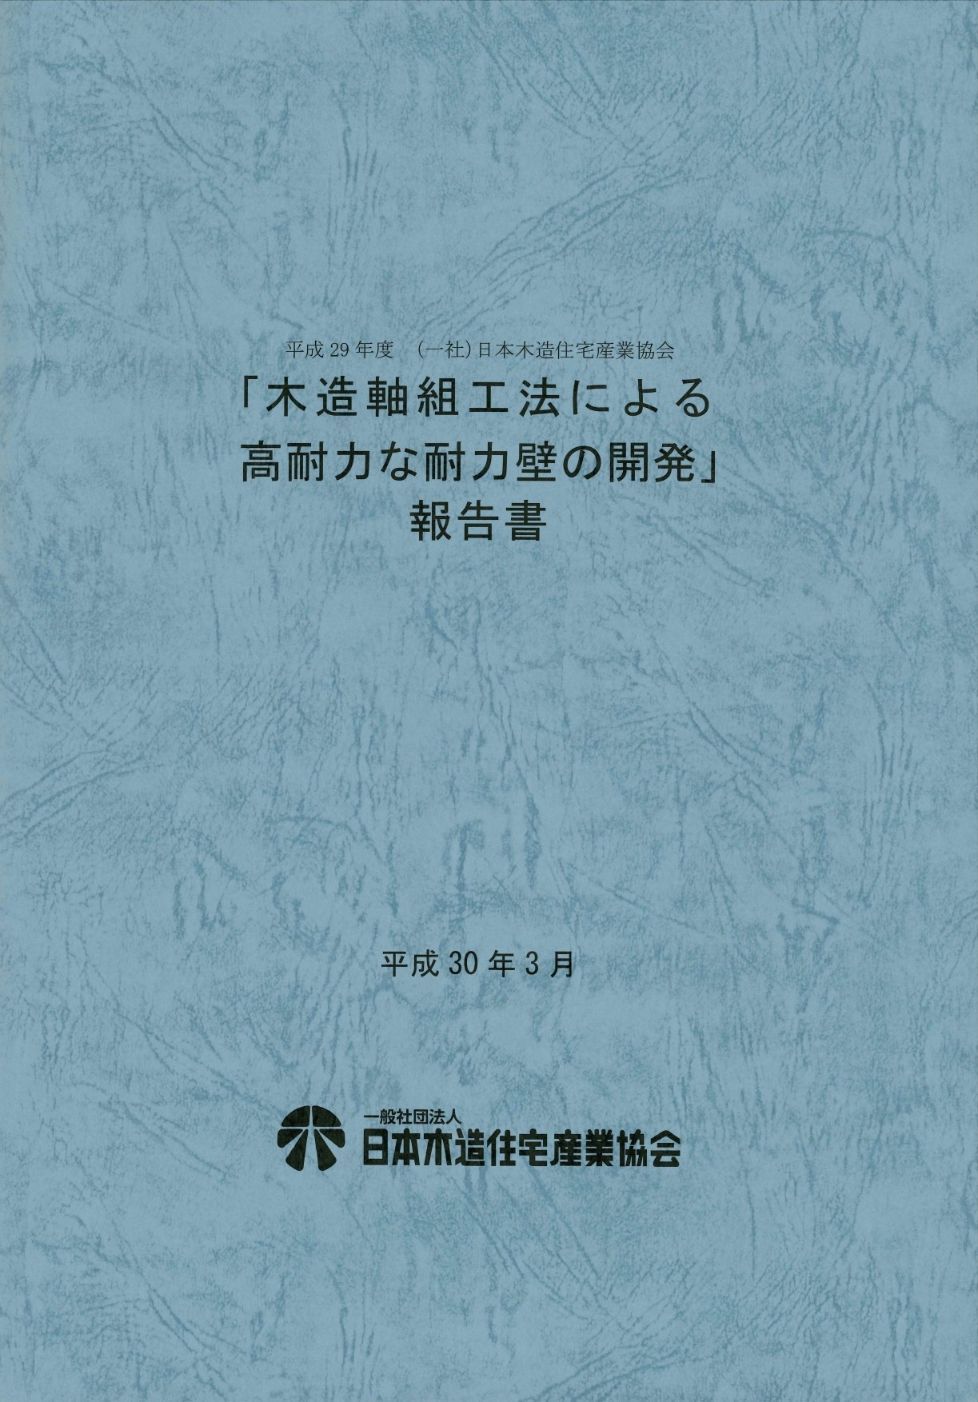 平成29年度（一社）日本木造住宅産業協会「木造軸組み工法による高耐力な耐力壁の開発」報告書